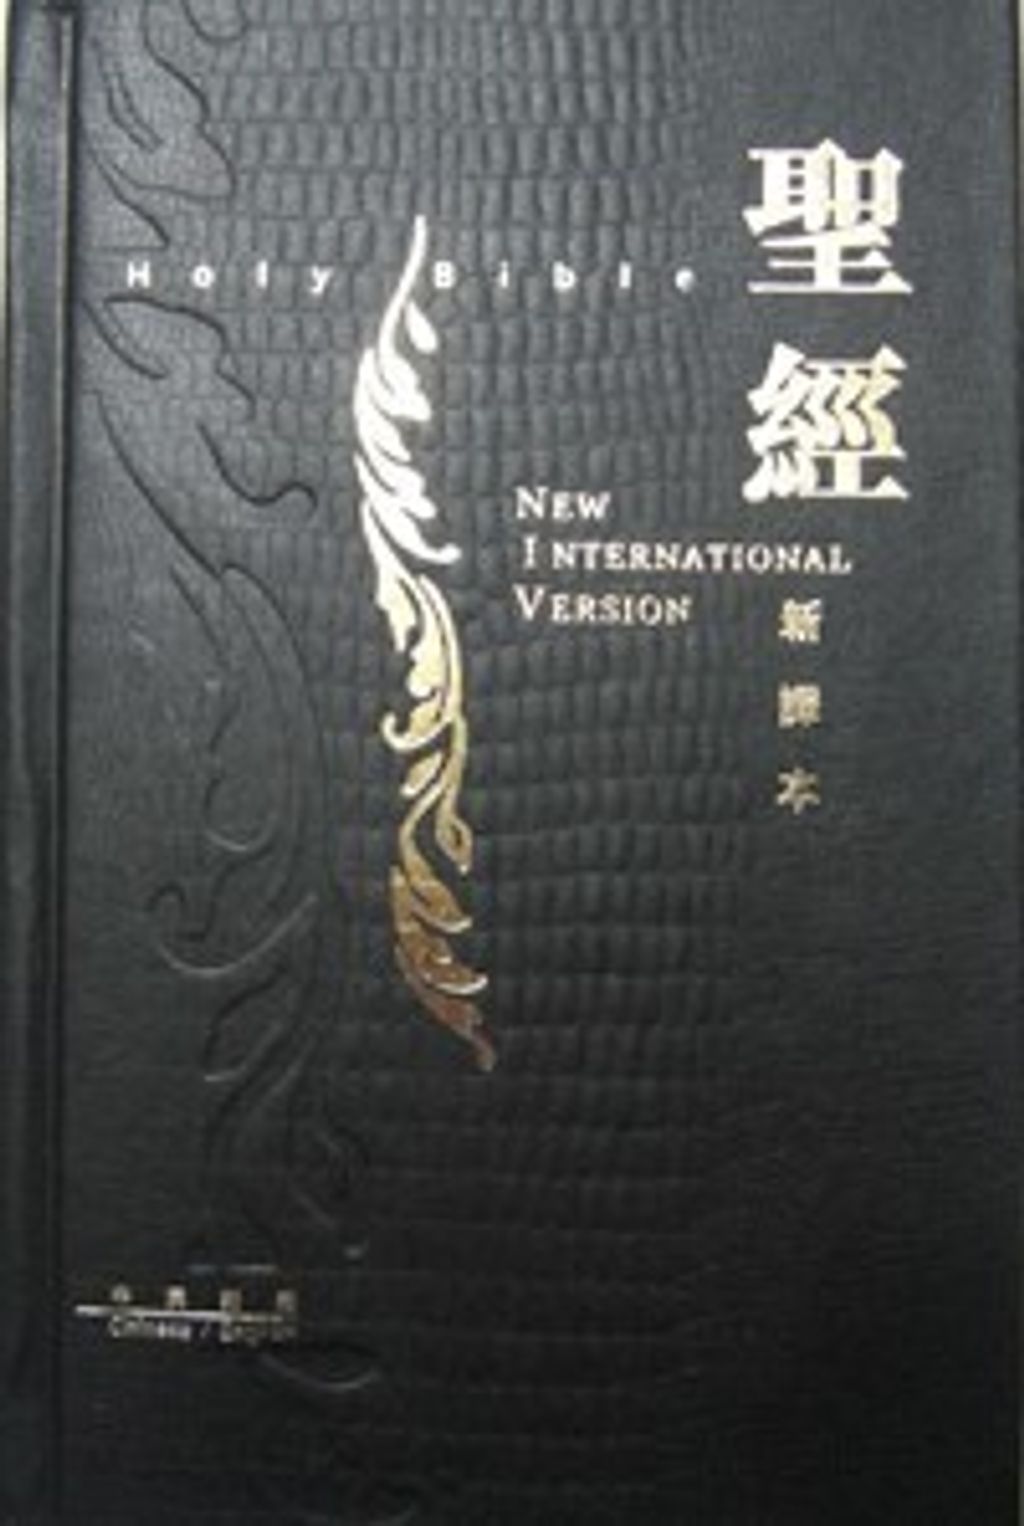 新譯本‧NIV 中型裝 黑硬鱷魚紋.jpg